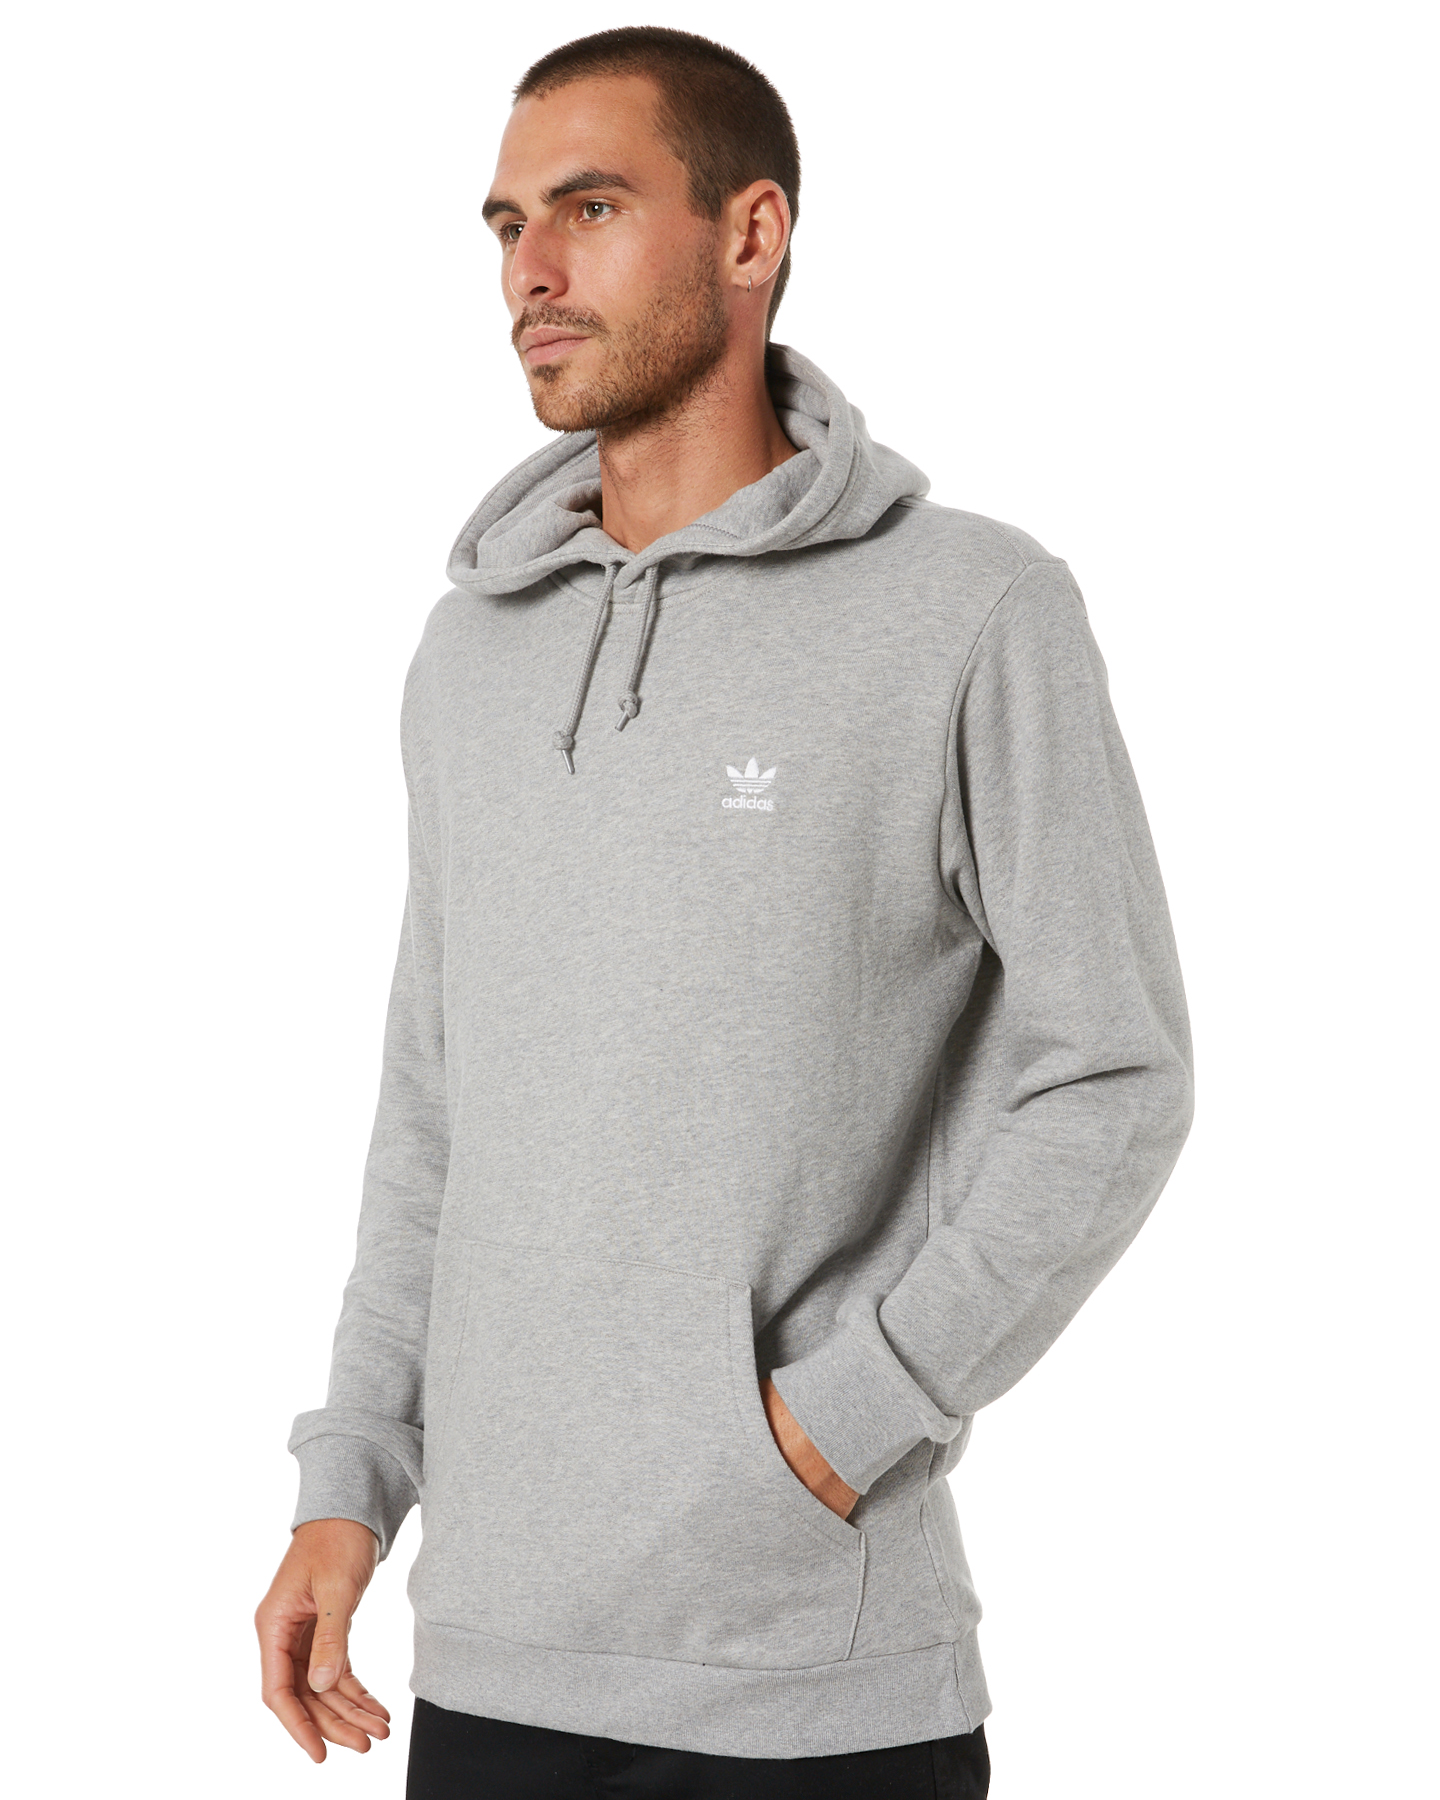 Adidas Essential Mens Hoody - Medium Grey Heather | SurfStitch